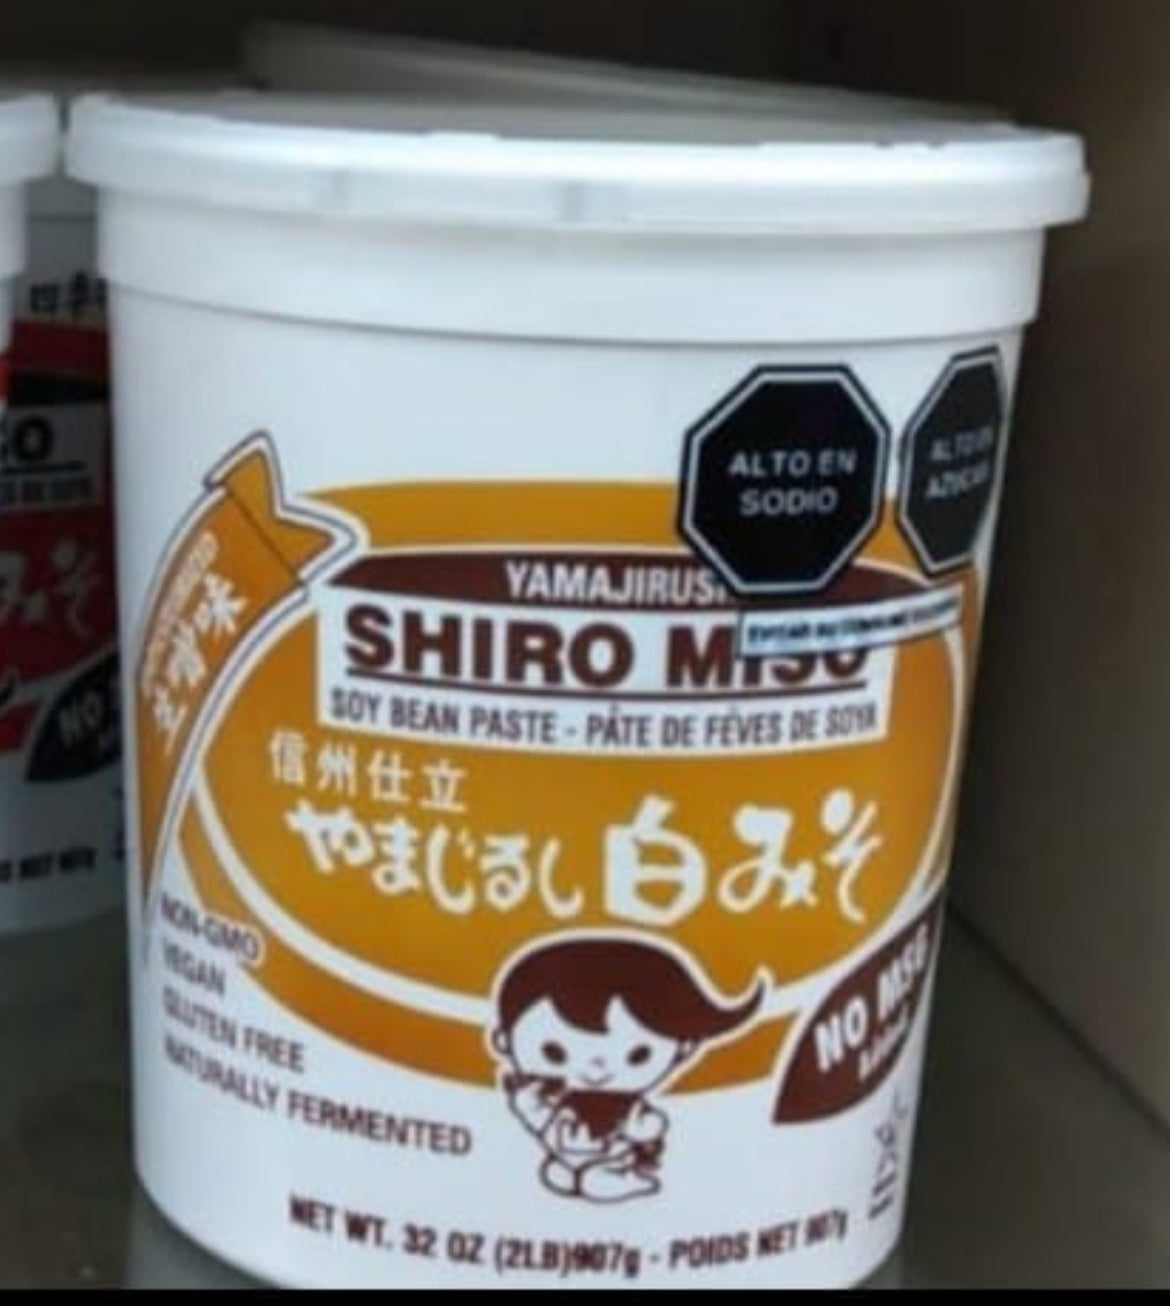 Yamayirushi pasta shiro misso balde 1kg